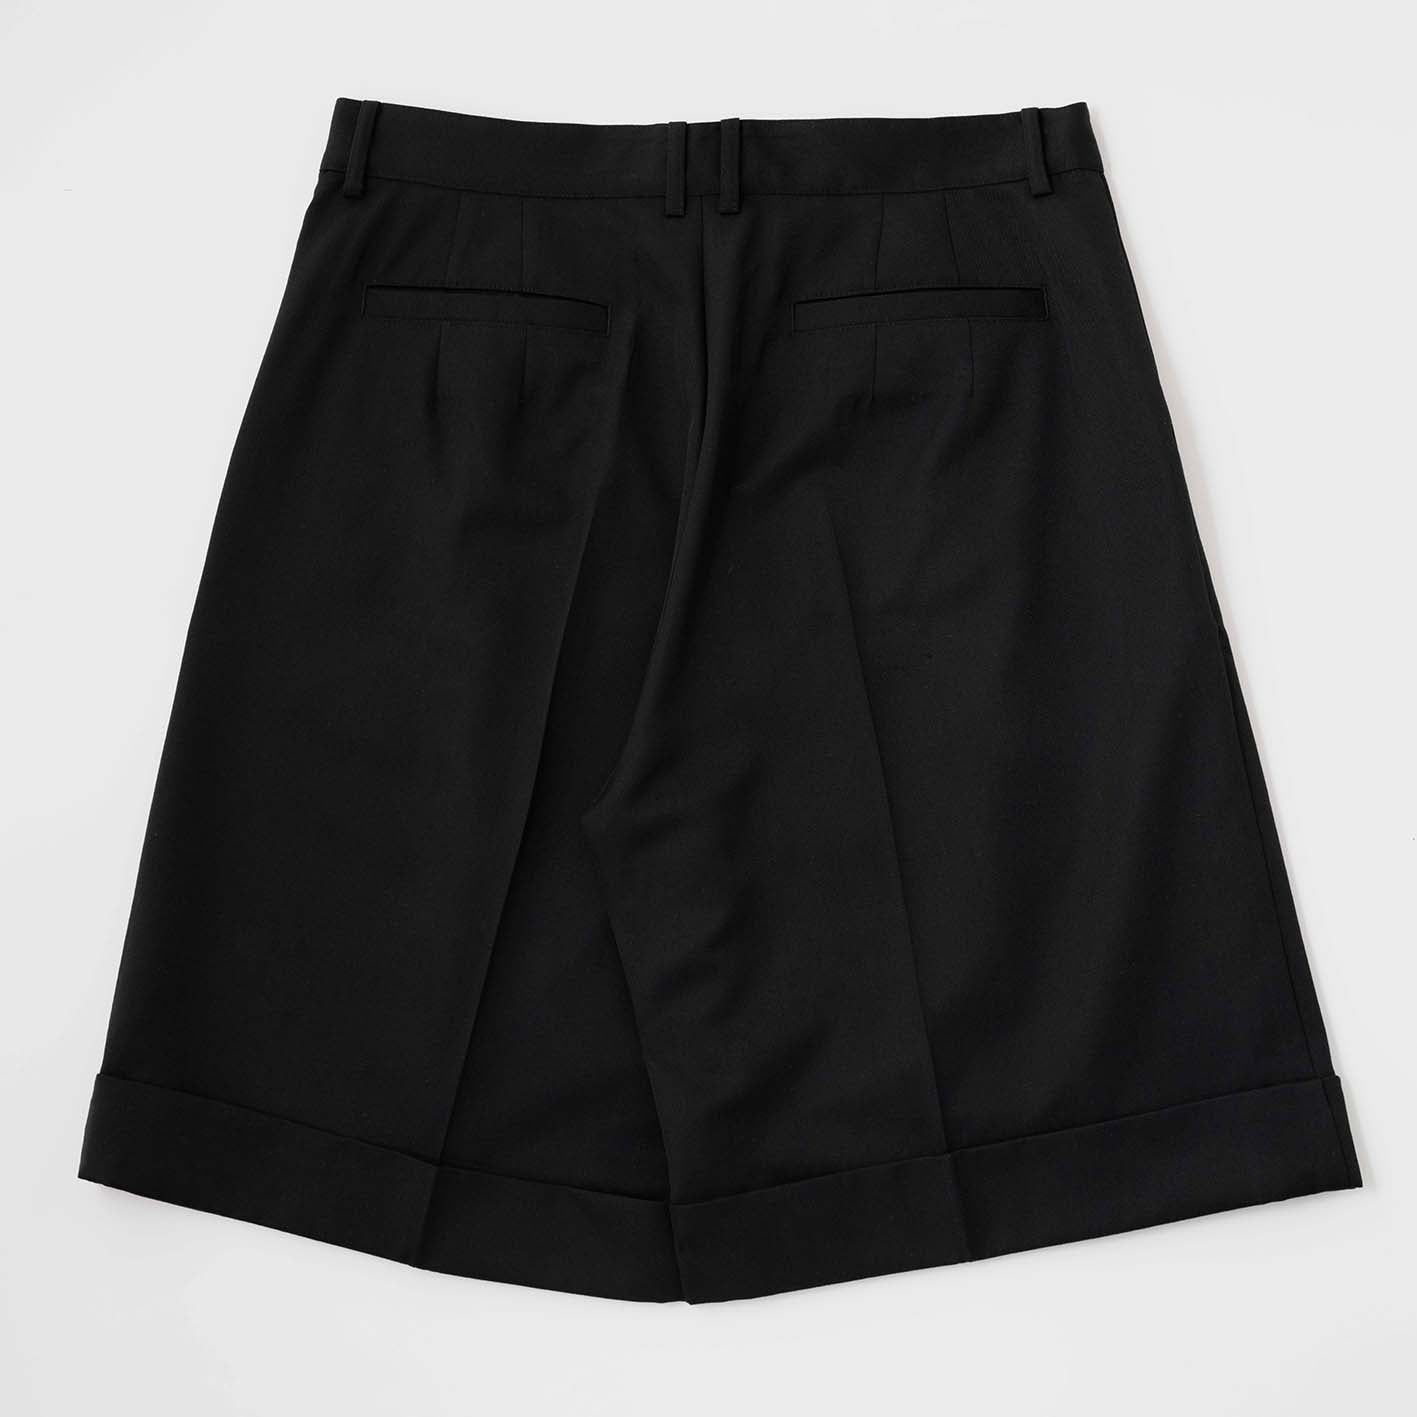 Unisex tuck shorts